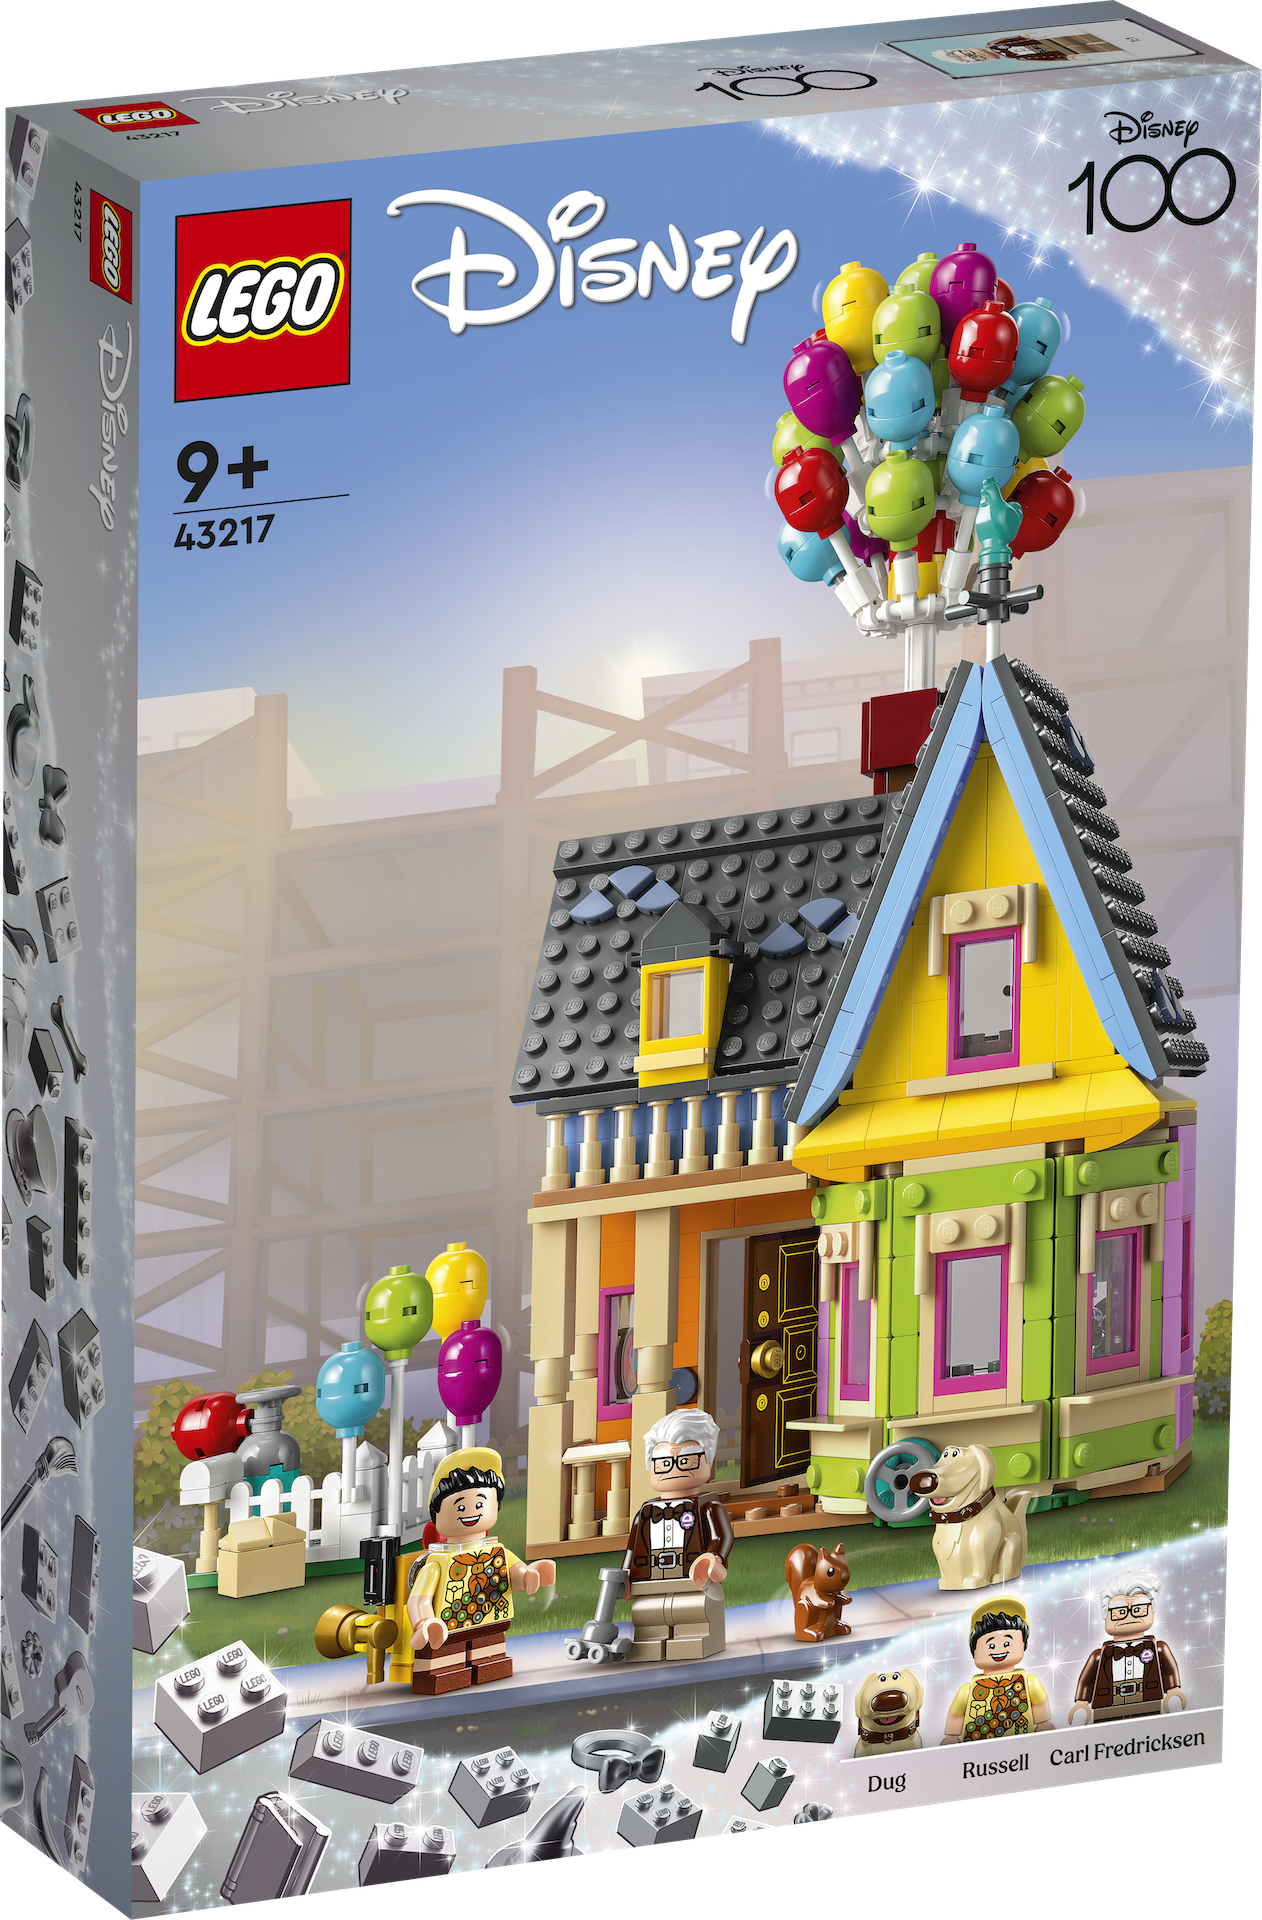 LEGO Disney 43217 Up House 1